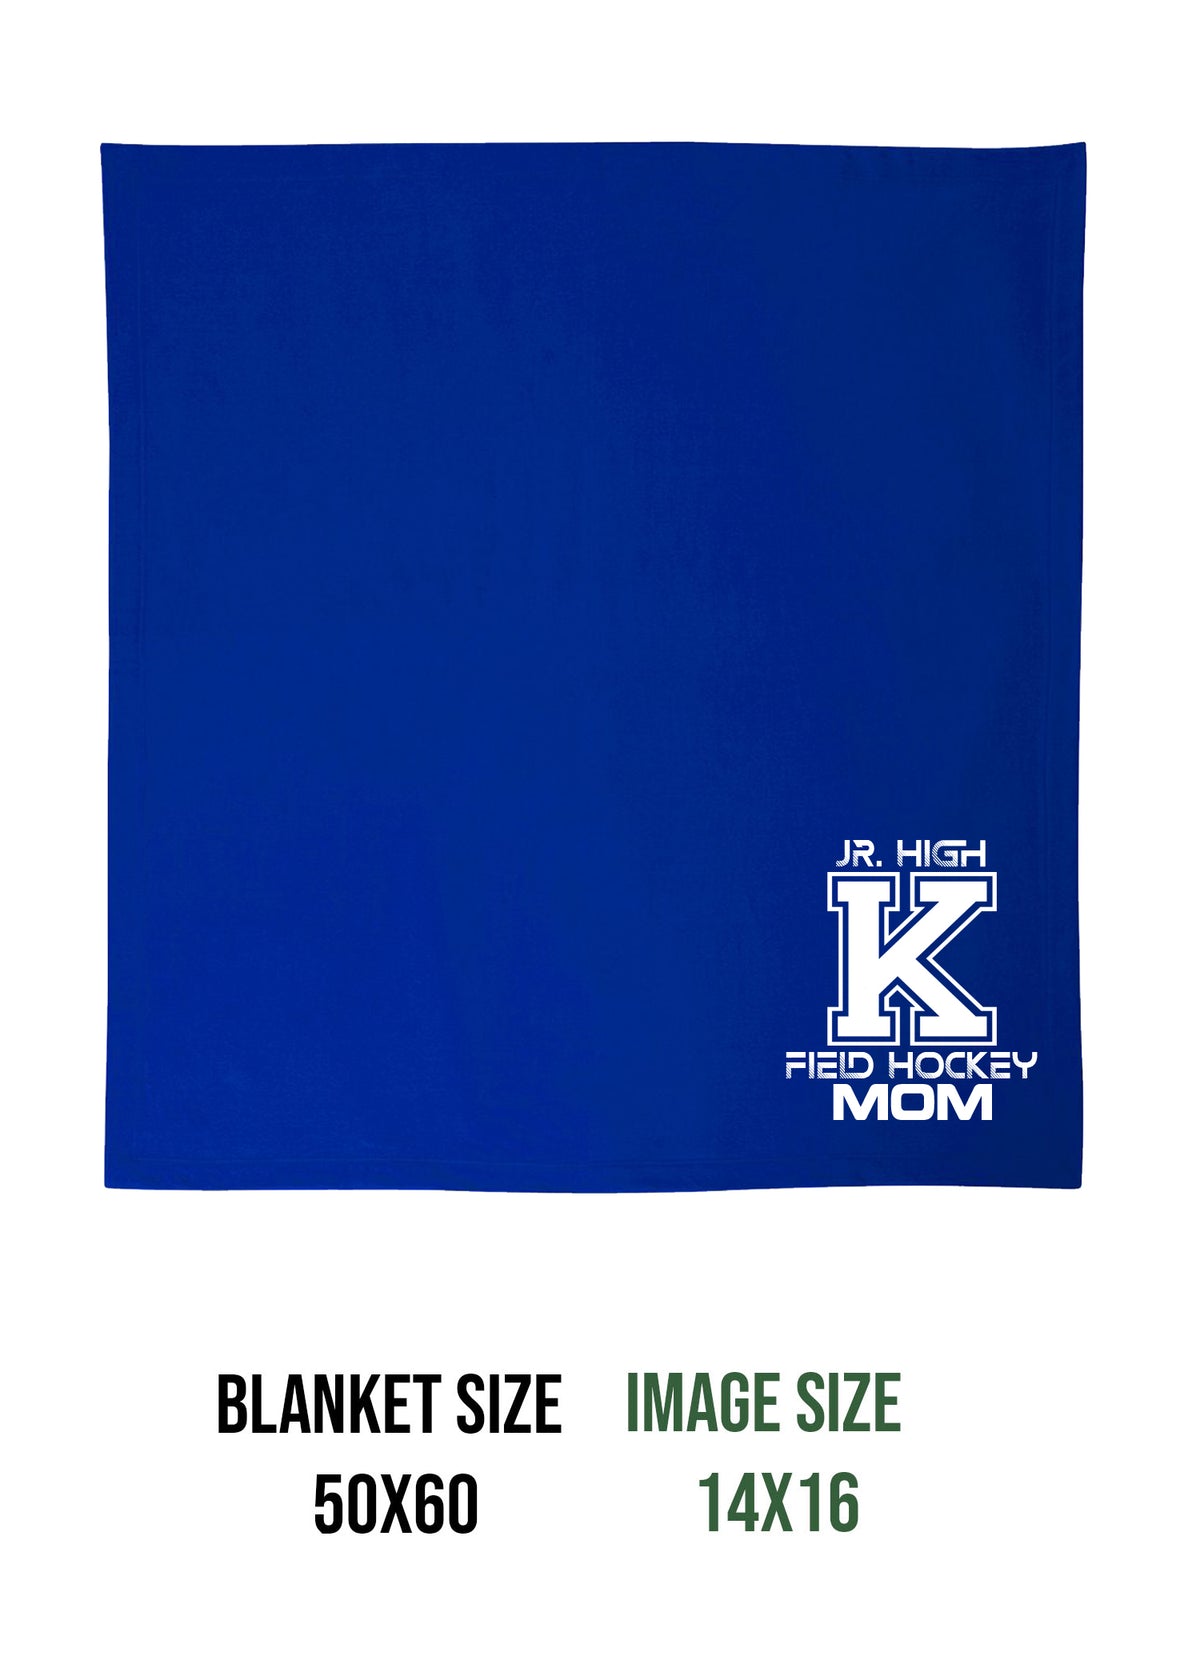 Kittatinny Jr High Field Hockey Design 4 Blanket